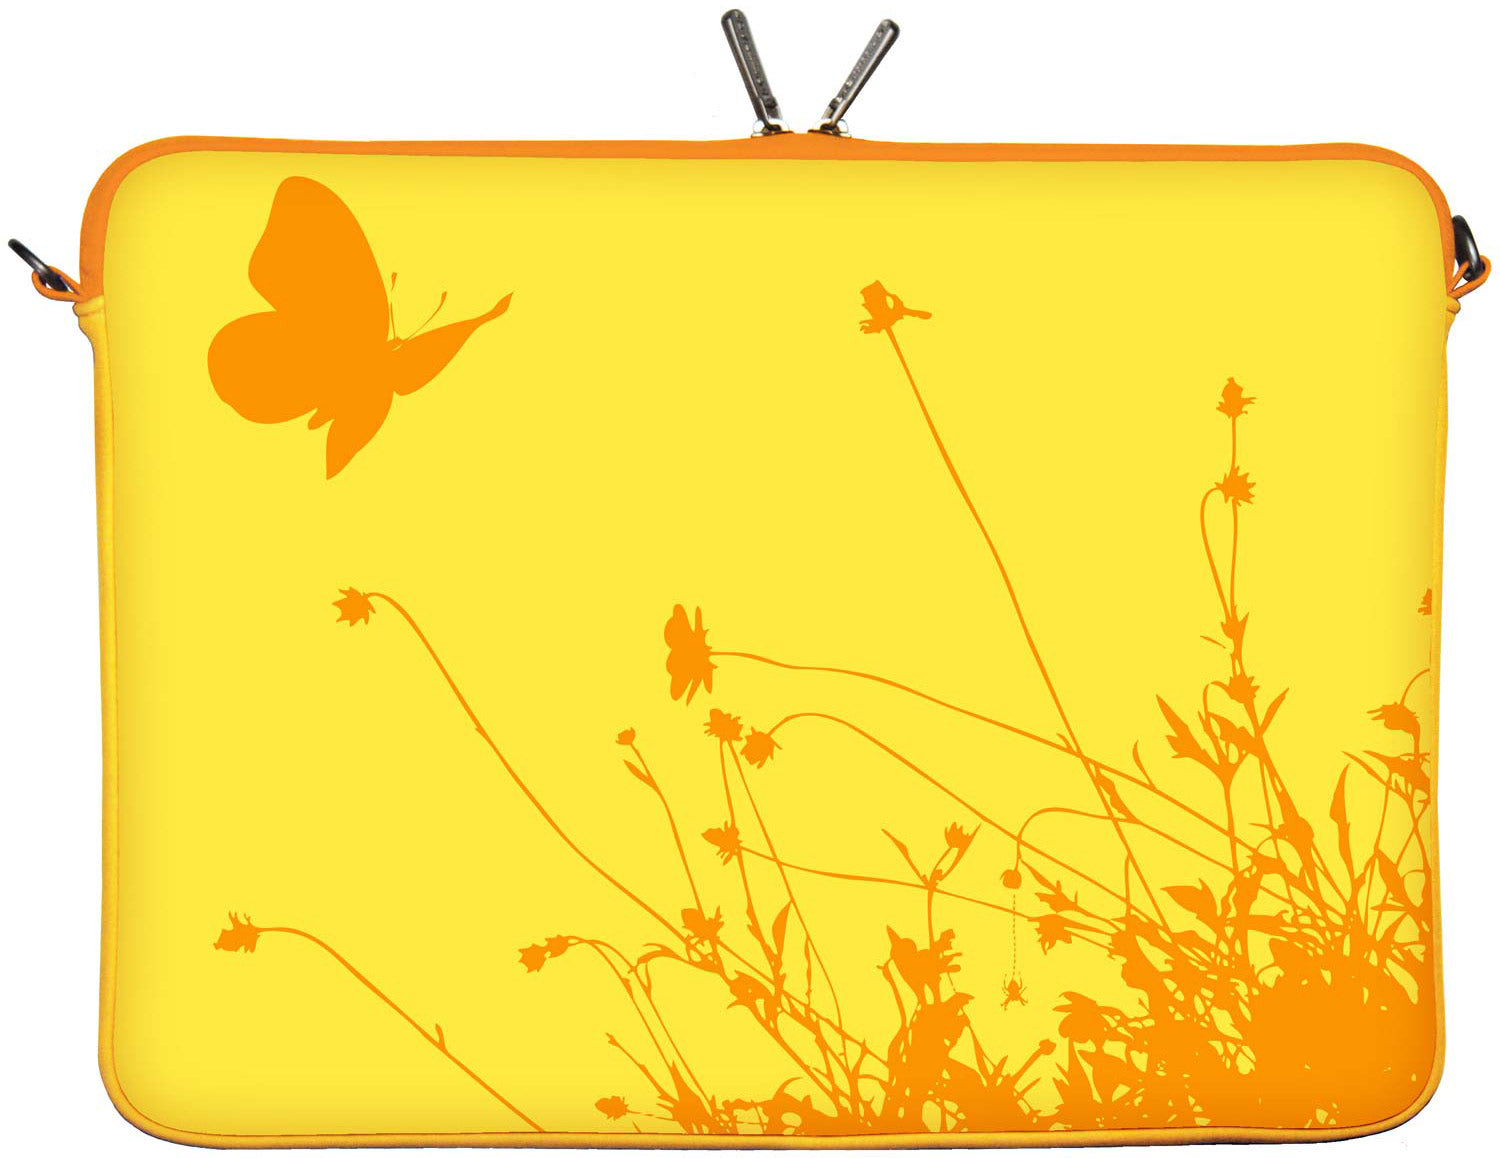 LS114 Summer Designer Laptop Tasche in gelb für Tablets, Laptops und Macbooks